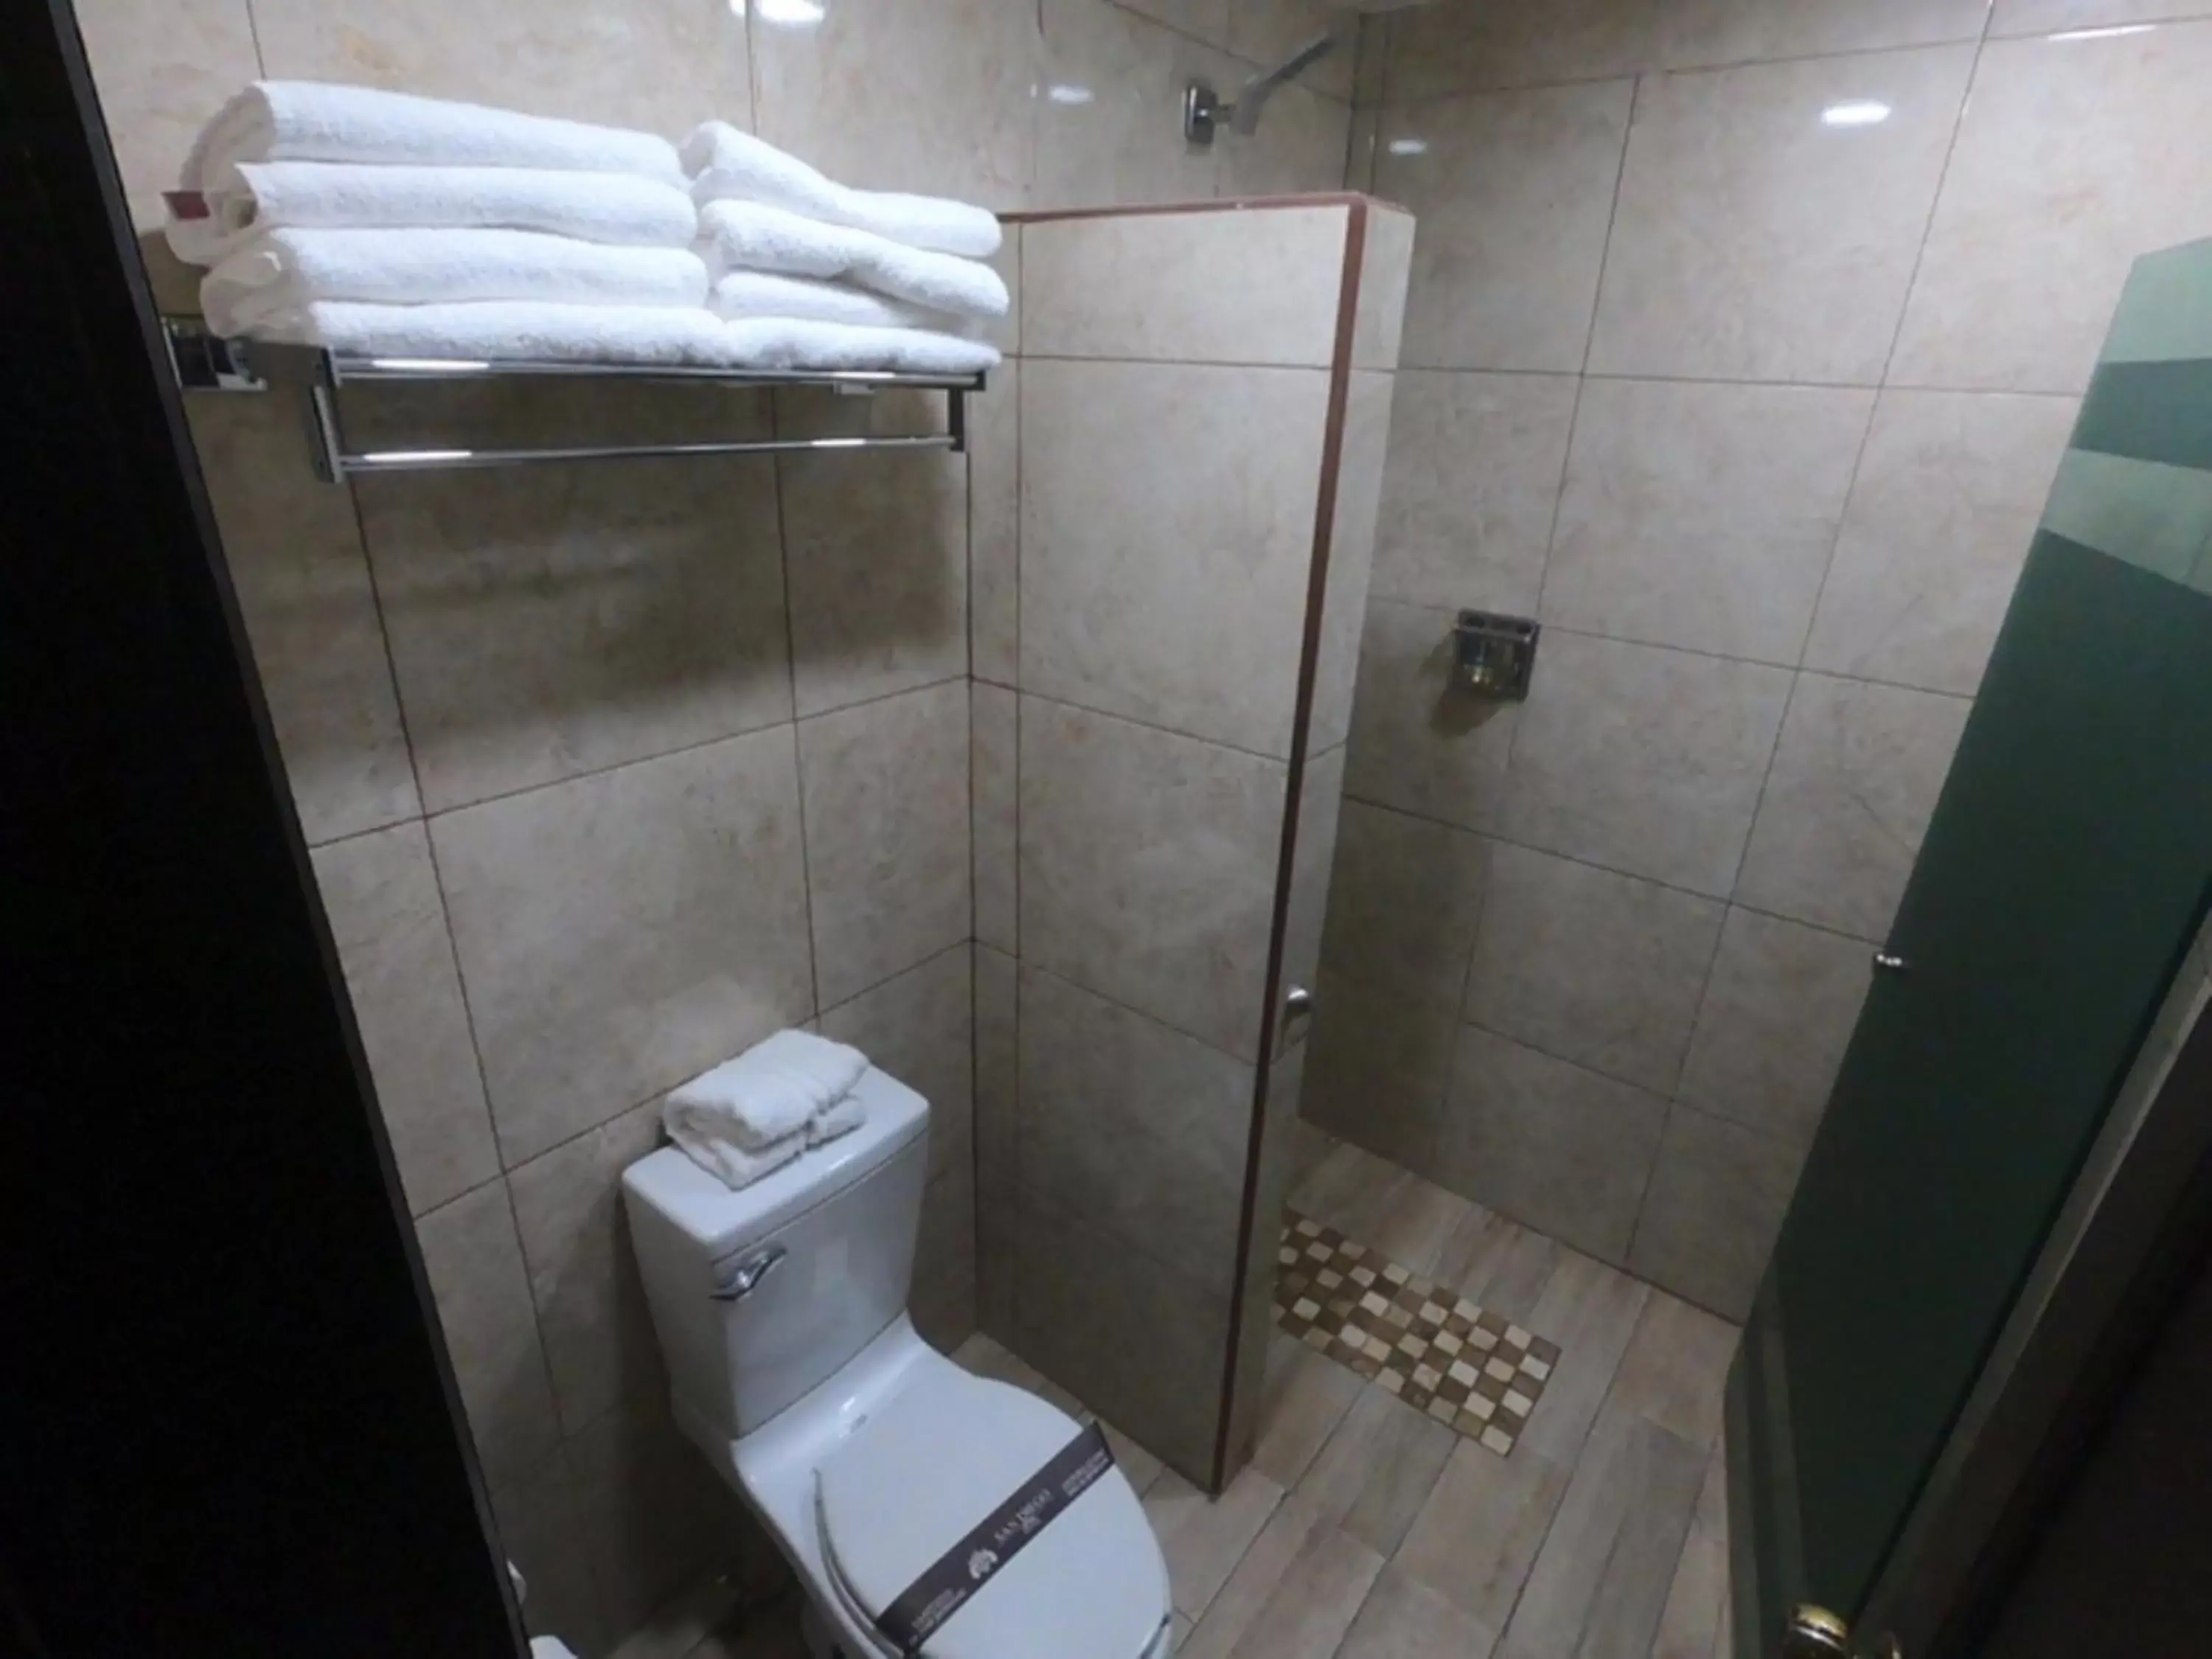 Bathroom in Hotel San Diego